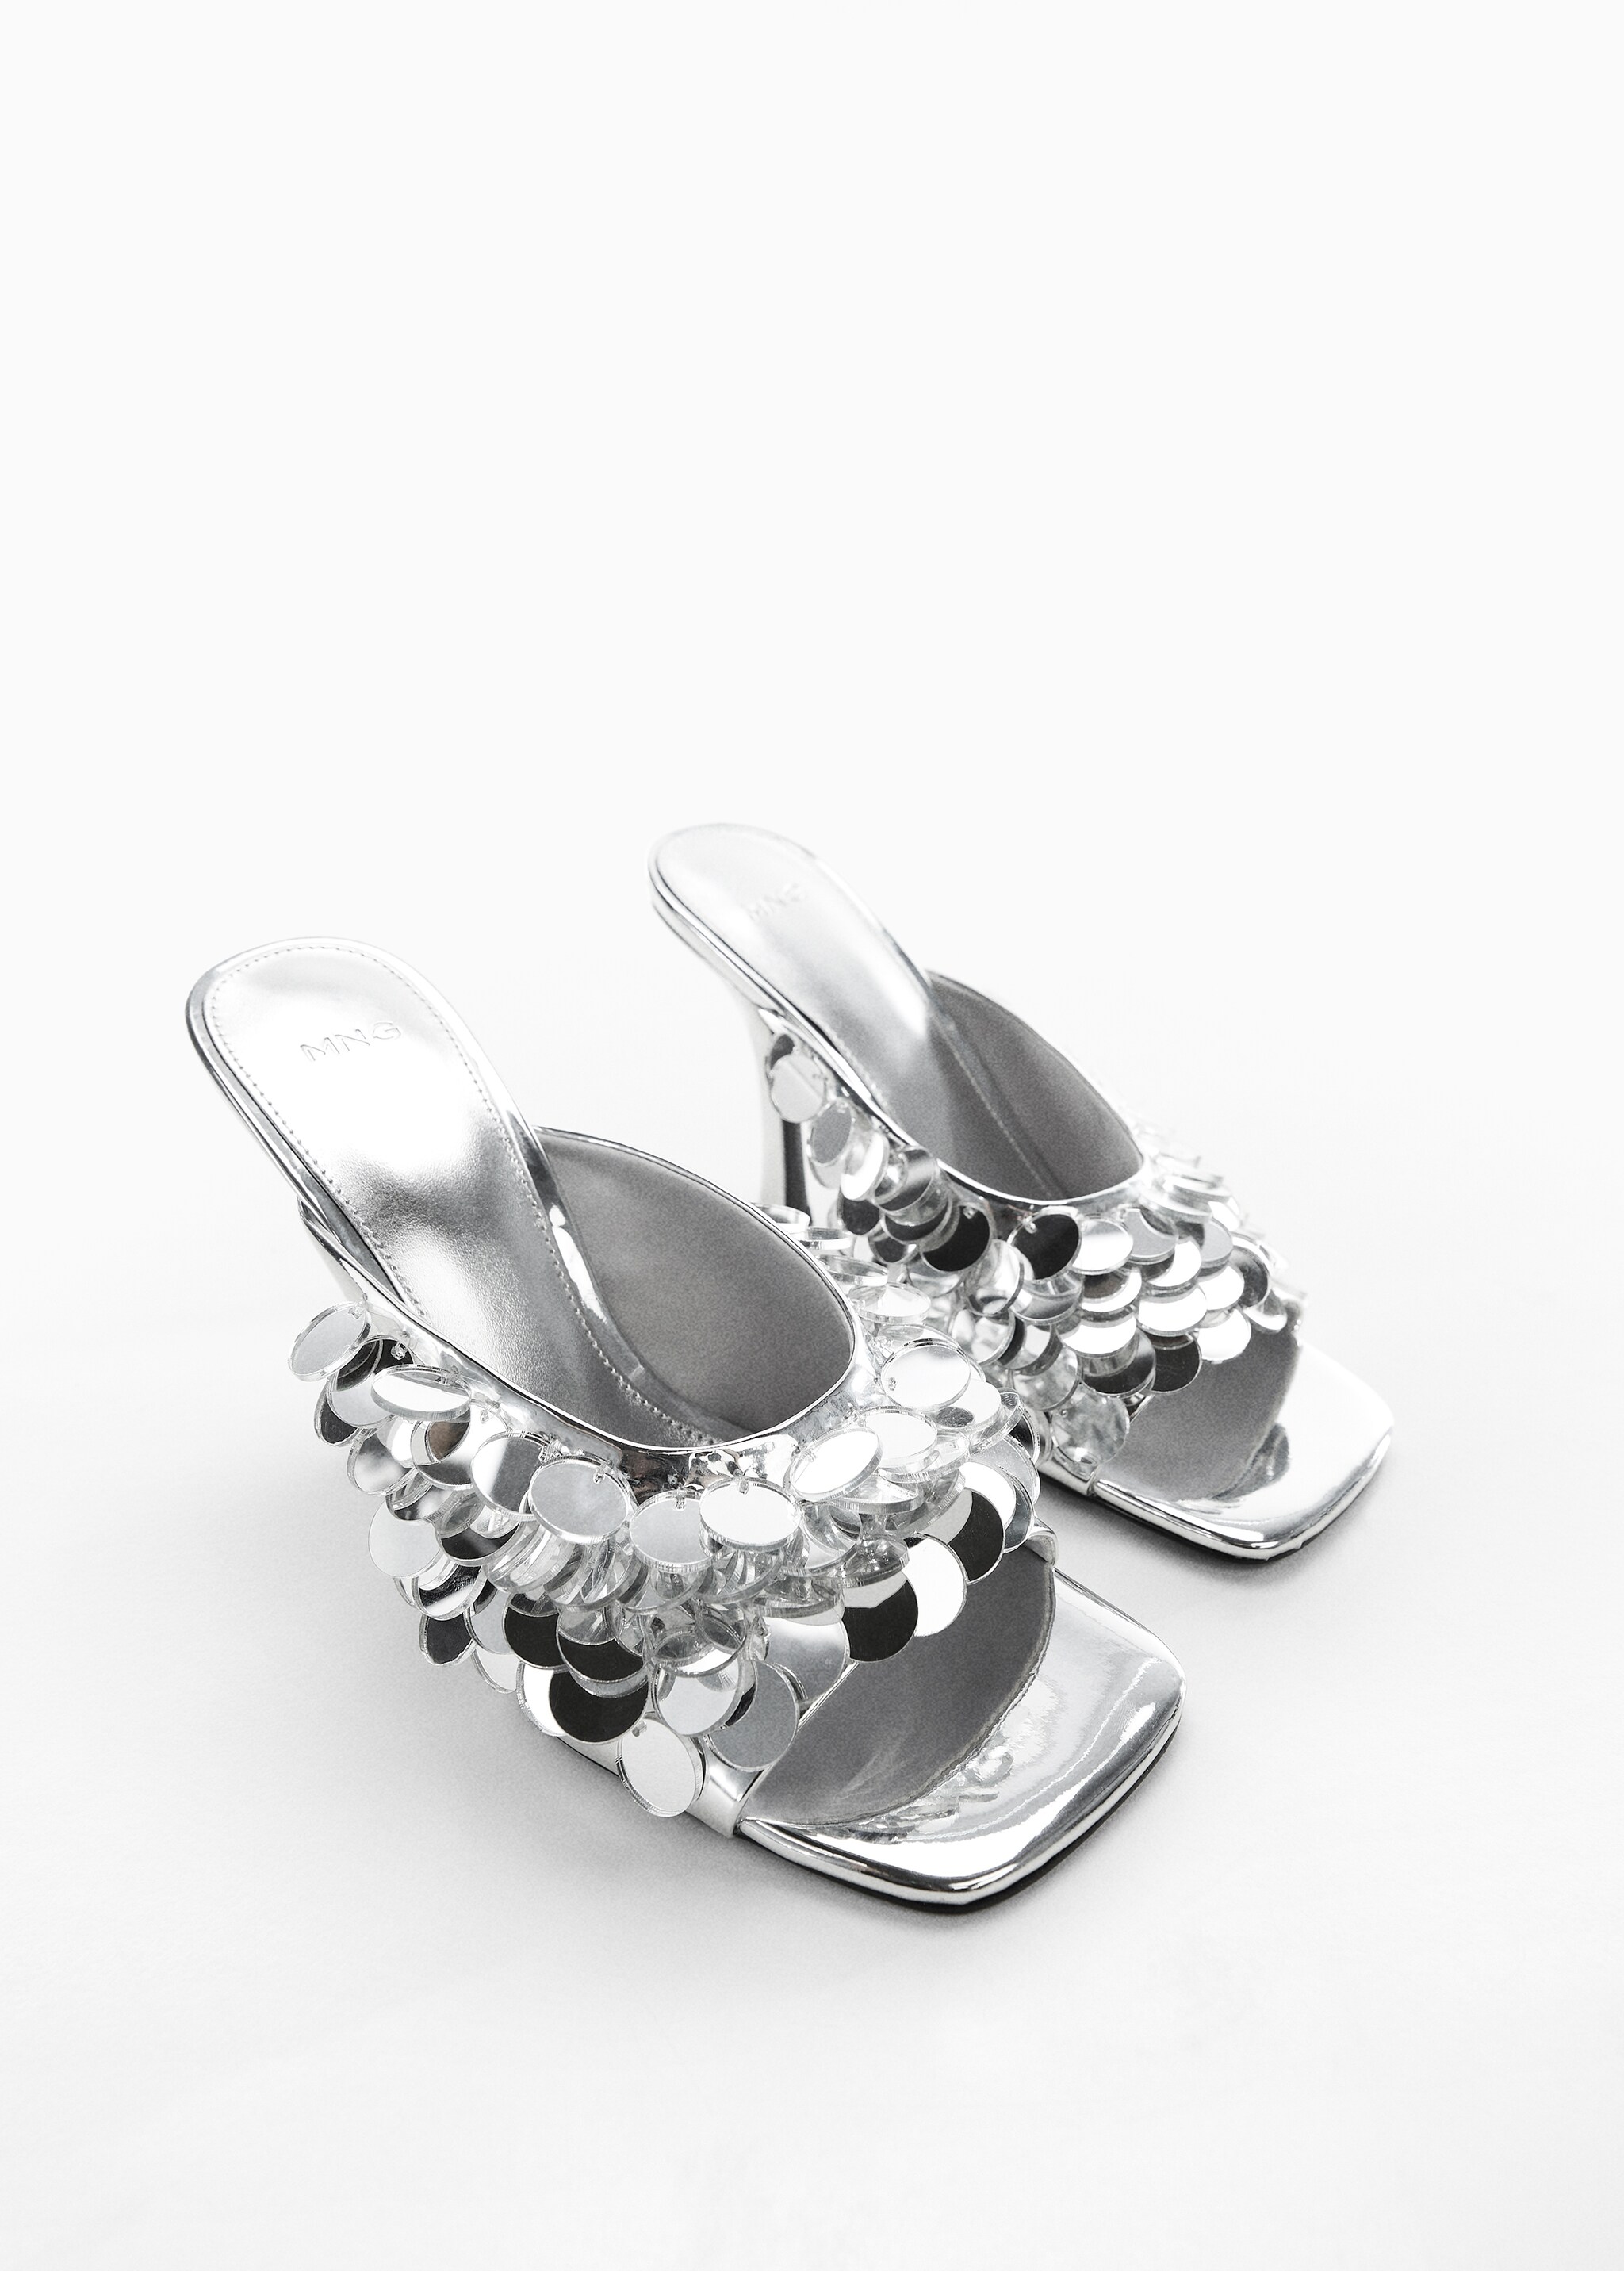 Sandale sa šljokicama i detaljem zrcala - Prikaz srednjeg dijela